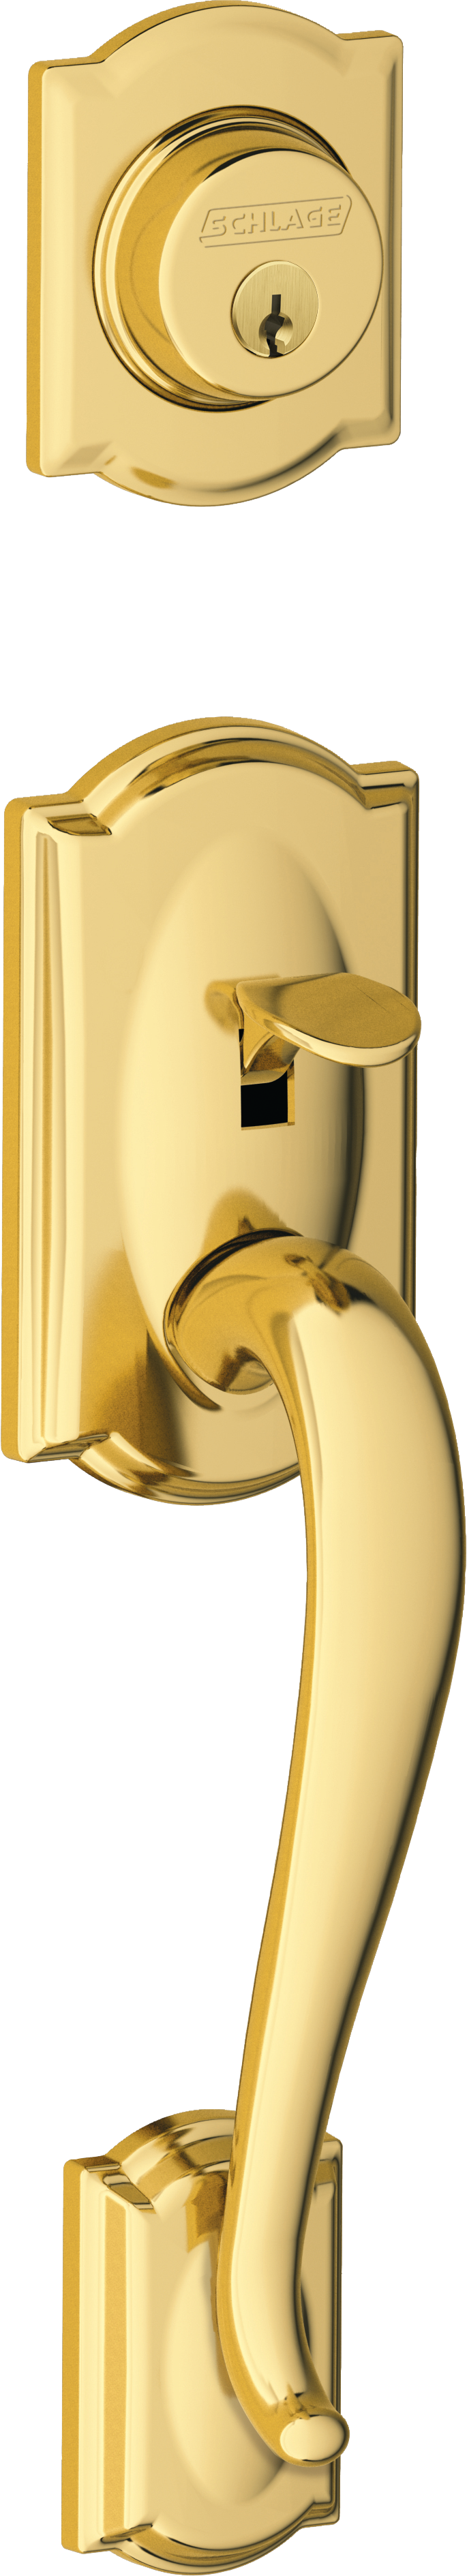 polished brass door handle